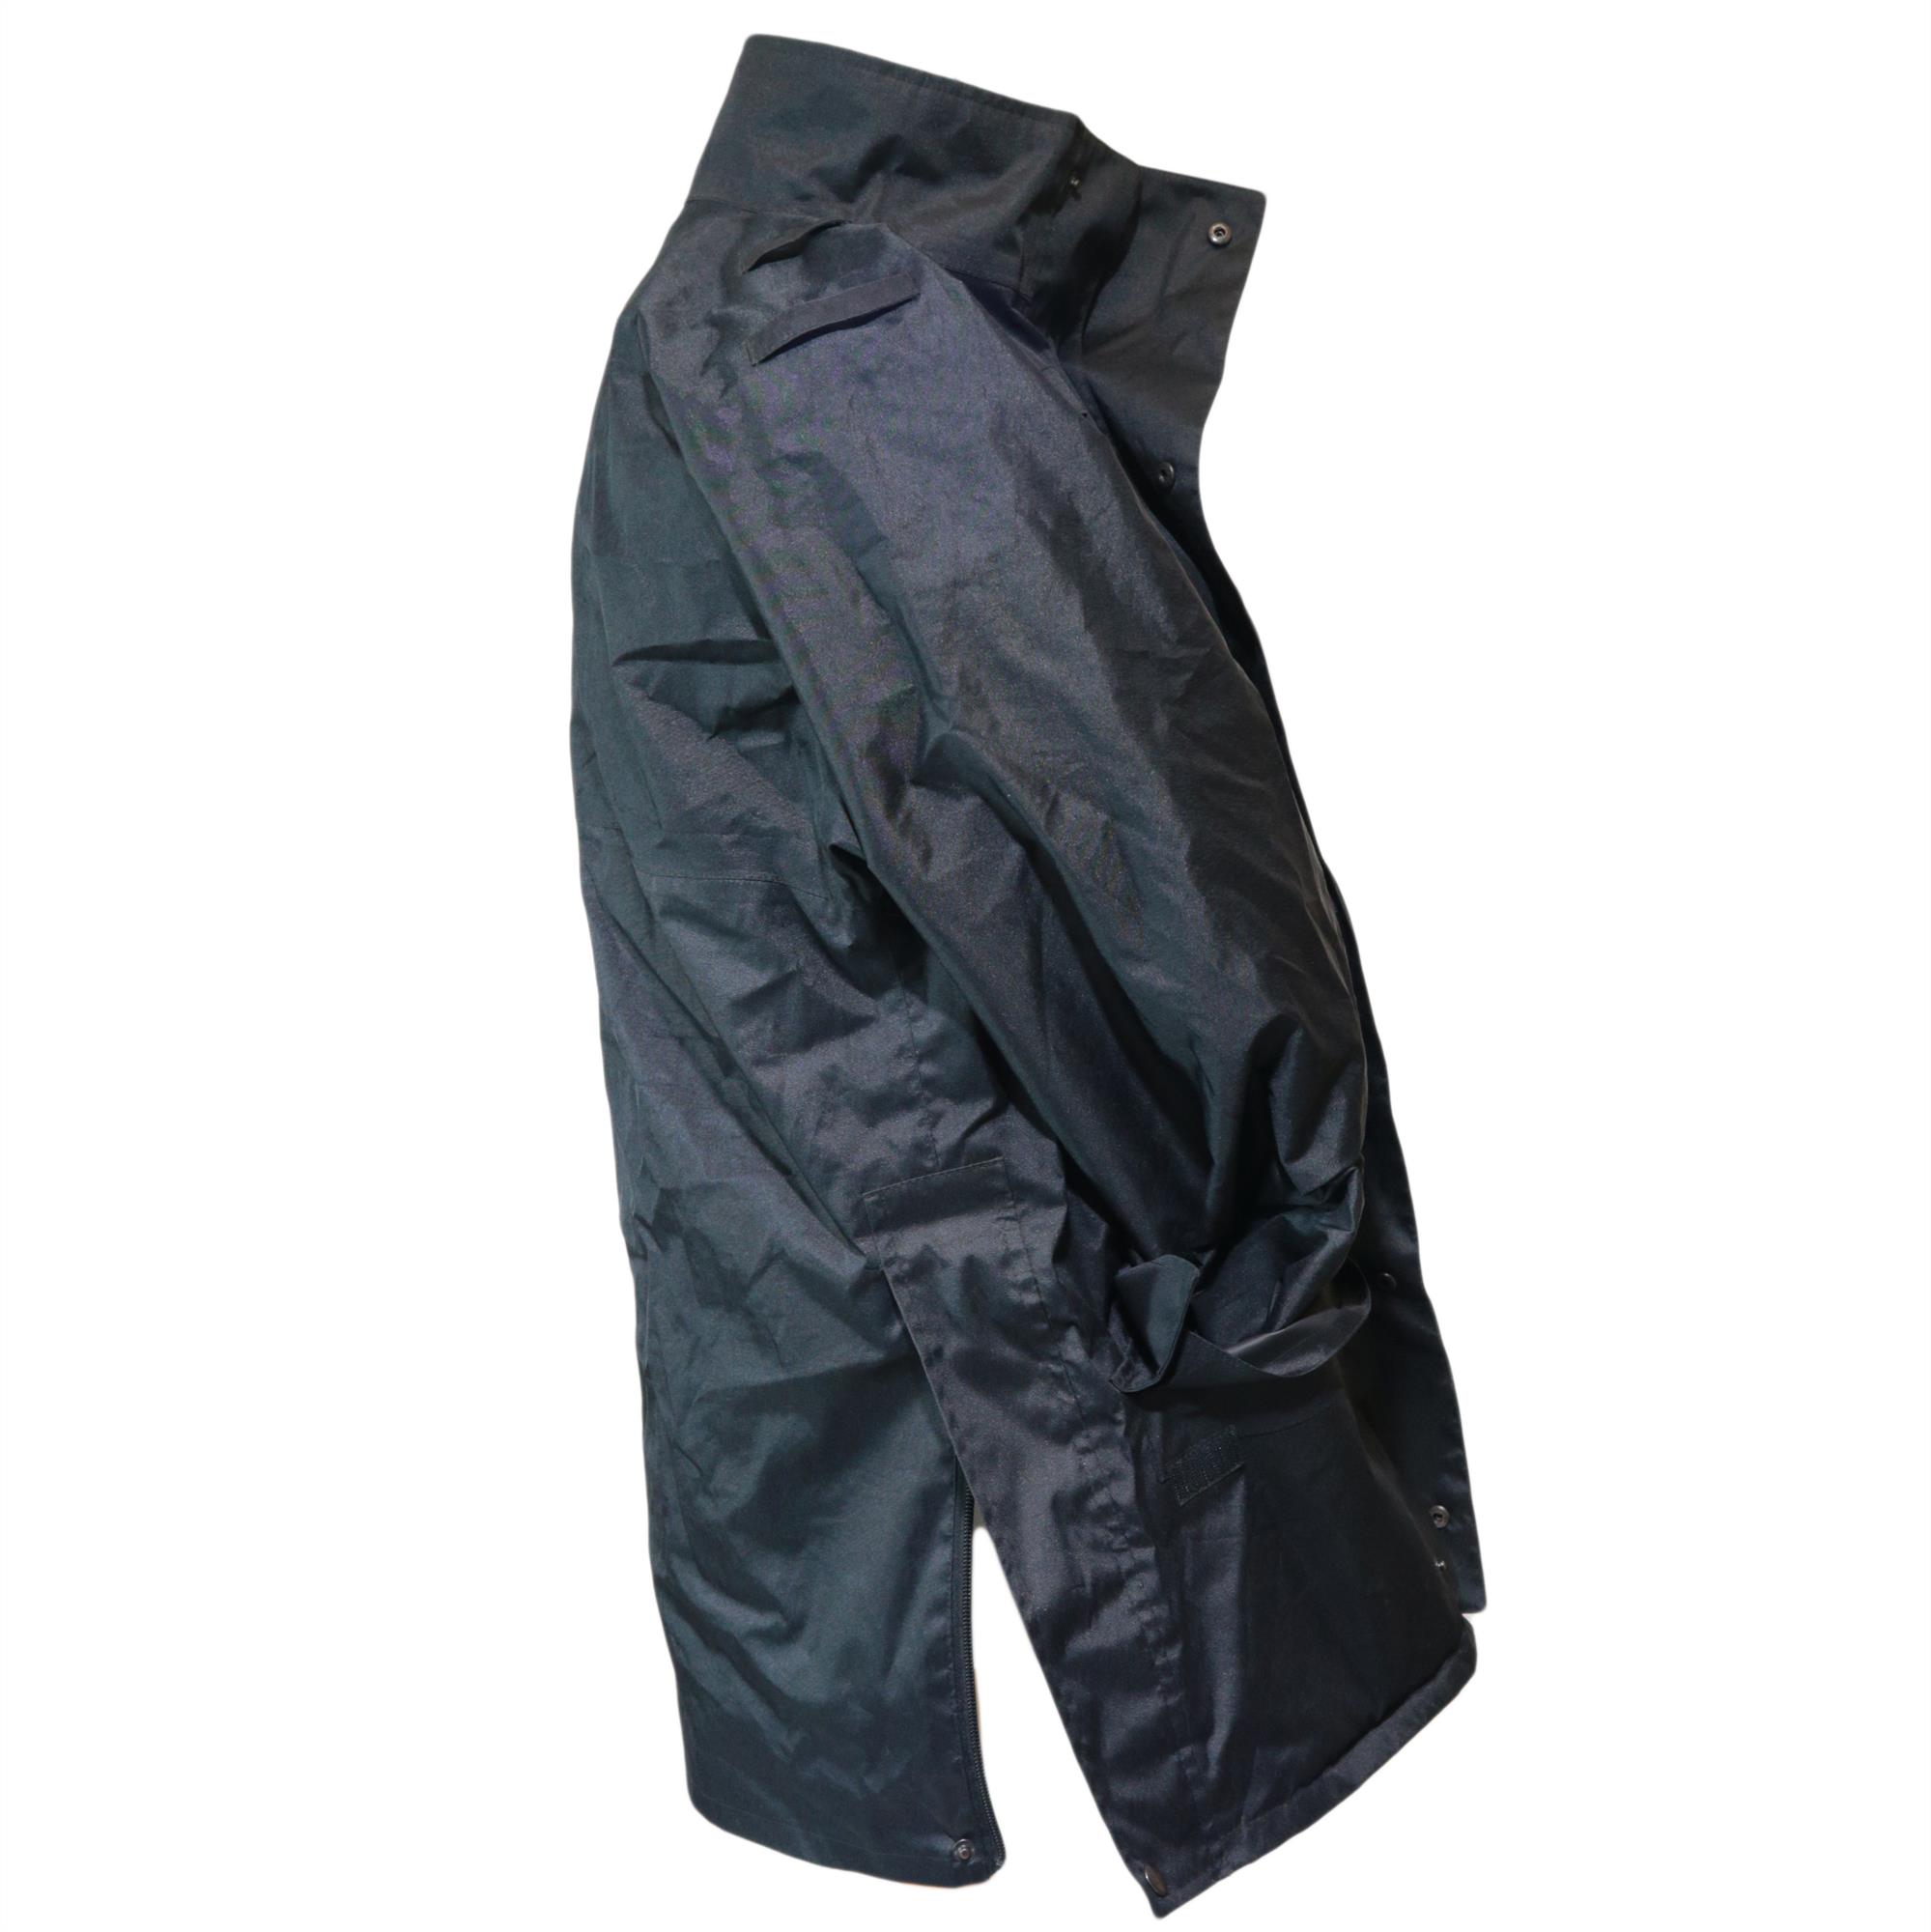 British Police surplus black waterproof / showerproof jacket